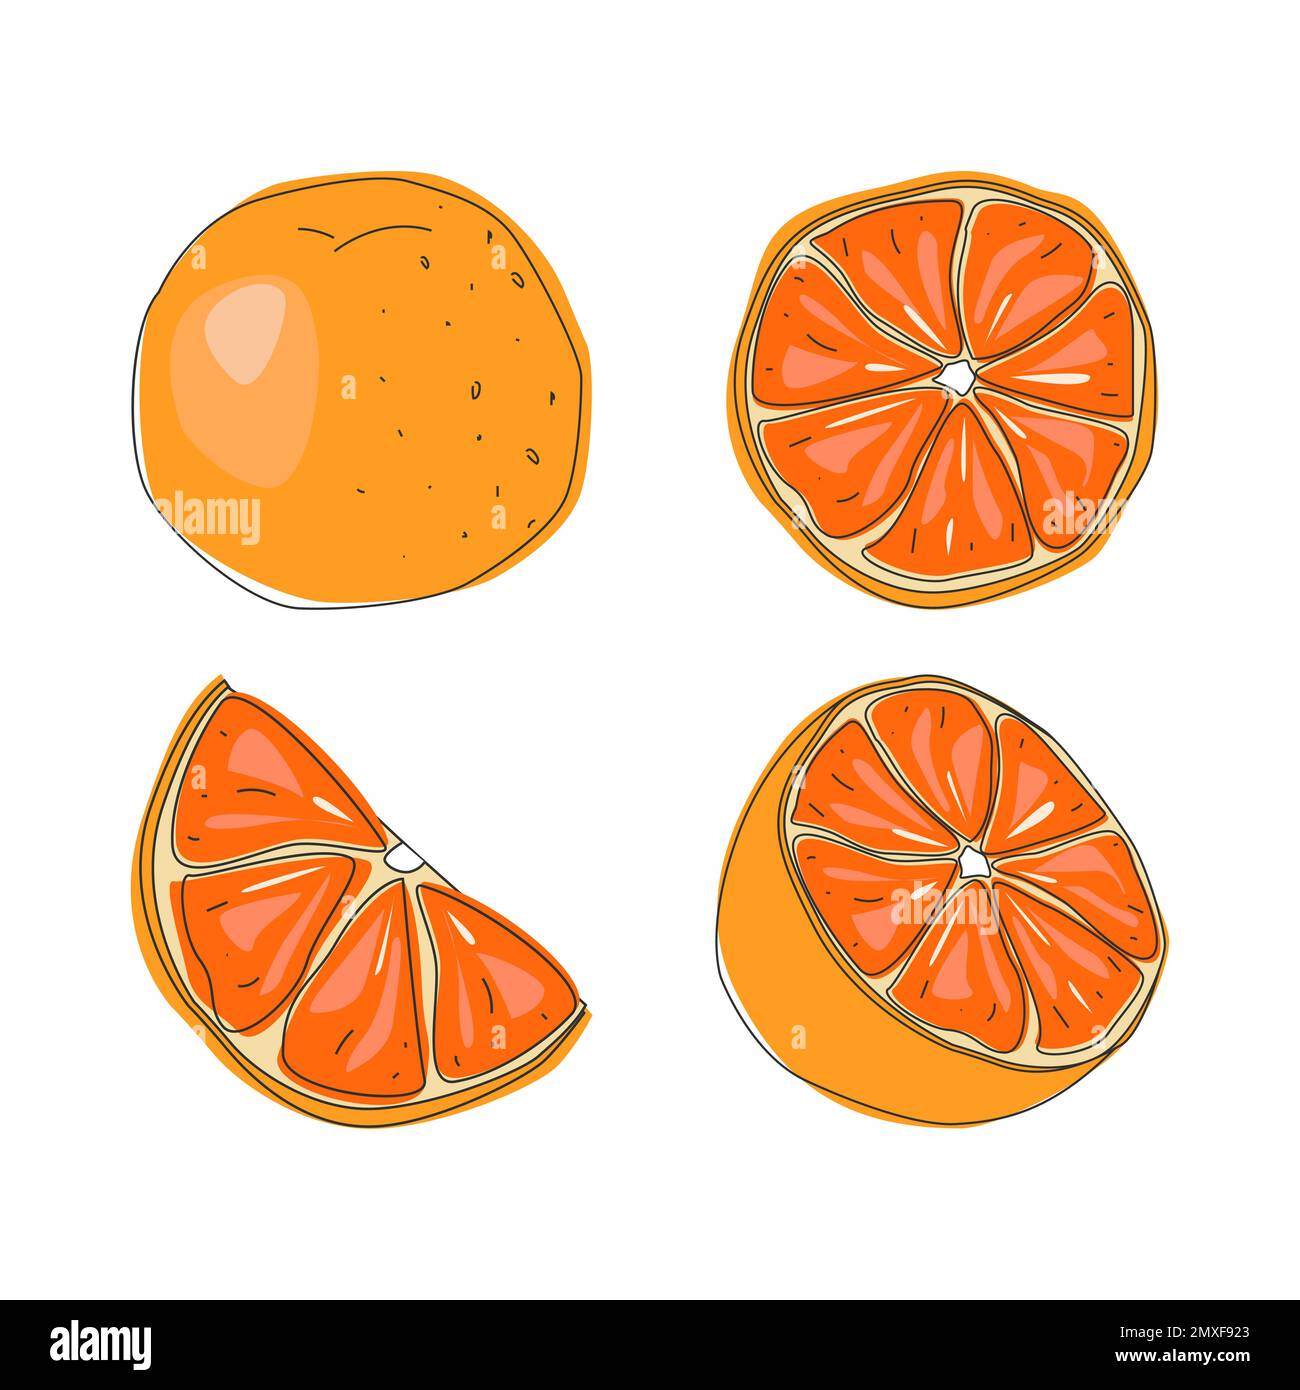 Ensemble de fruits frais entiers, de moitié, coupés en tranches et de feuilles de fruits orange isolés sur fond blanc. Mandarine. Fruits biologiques. Illustration de Vecteur